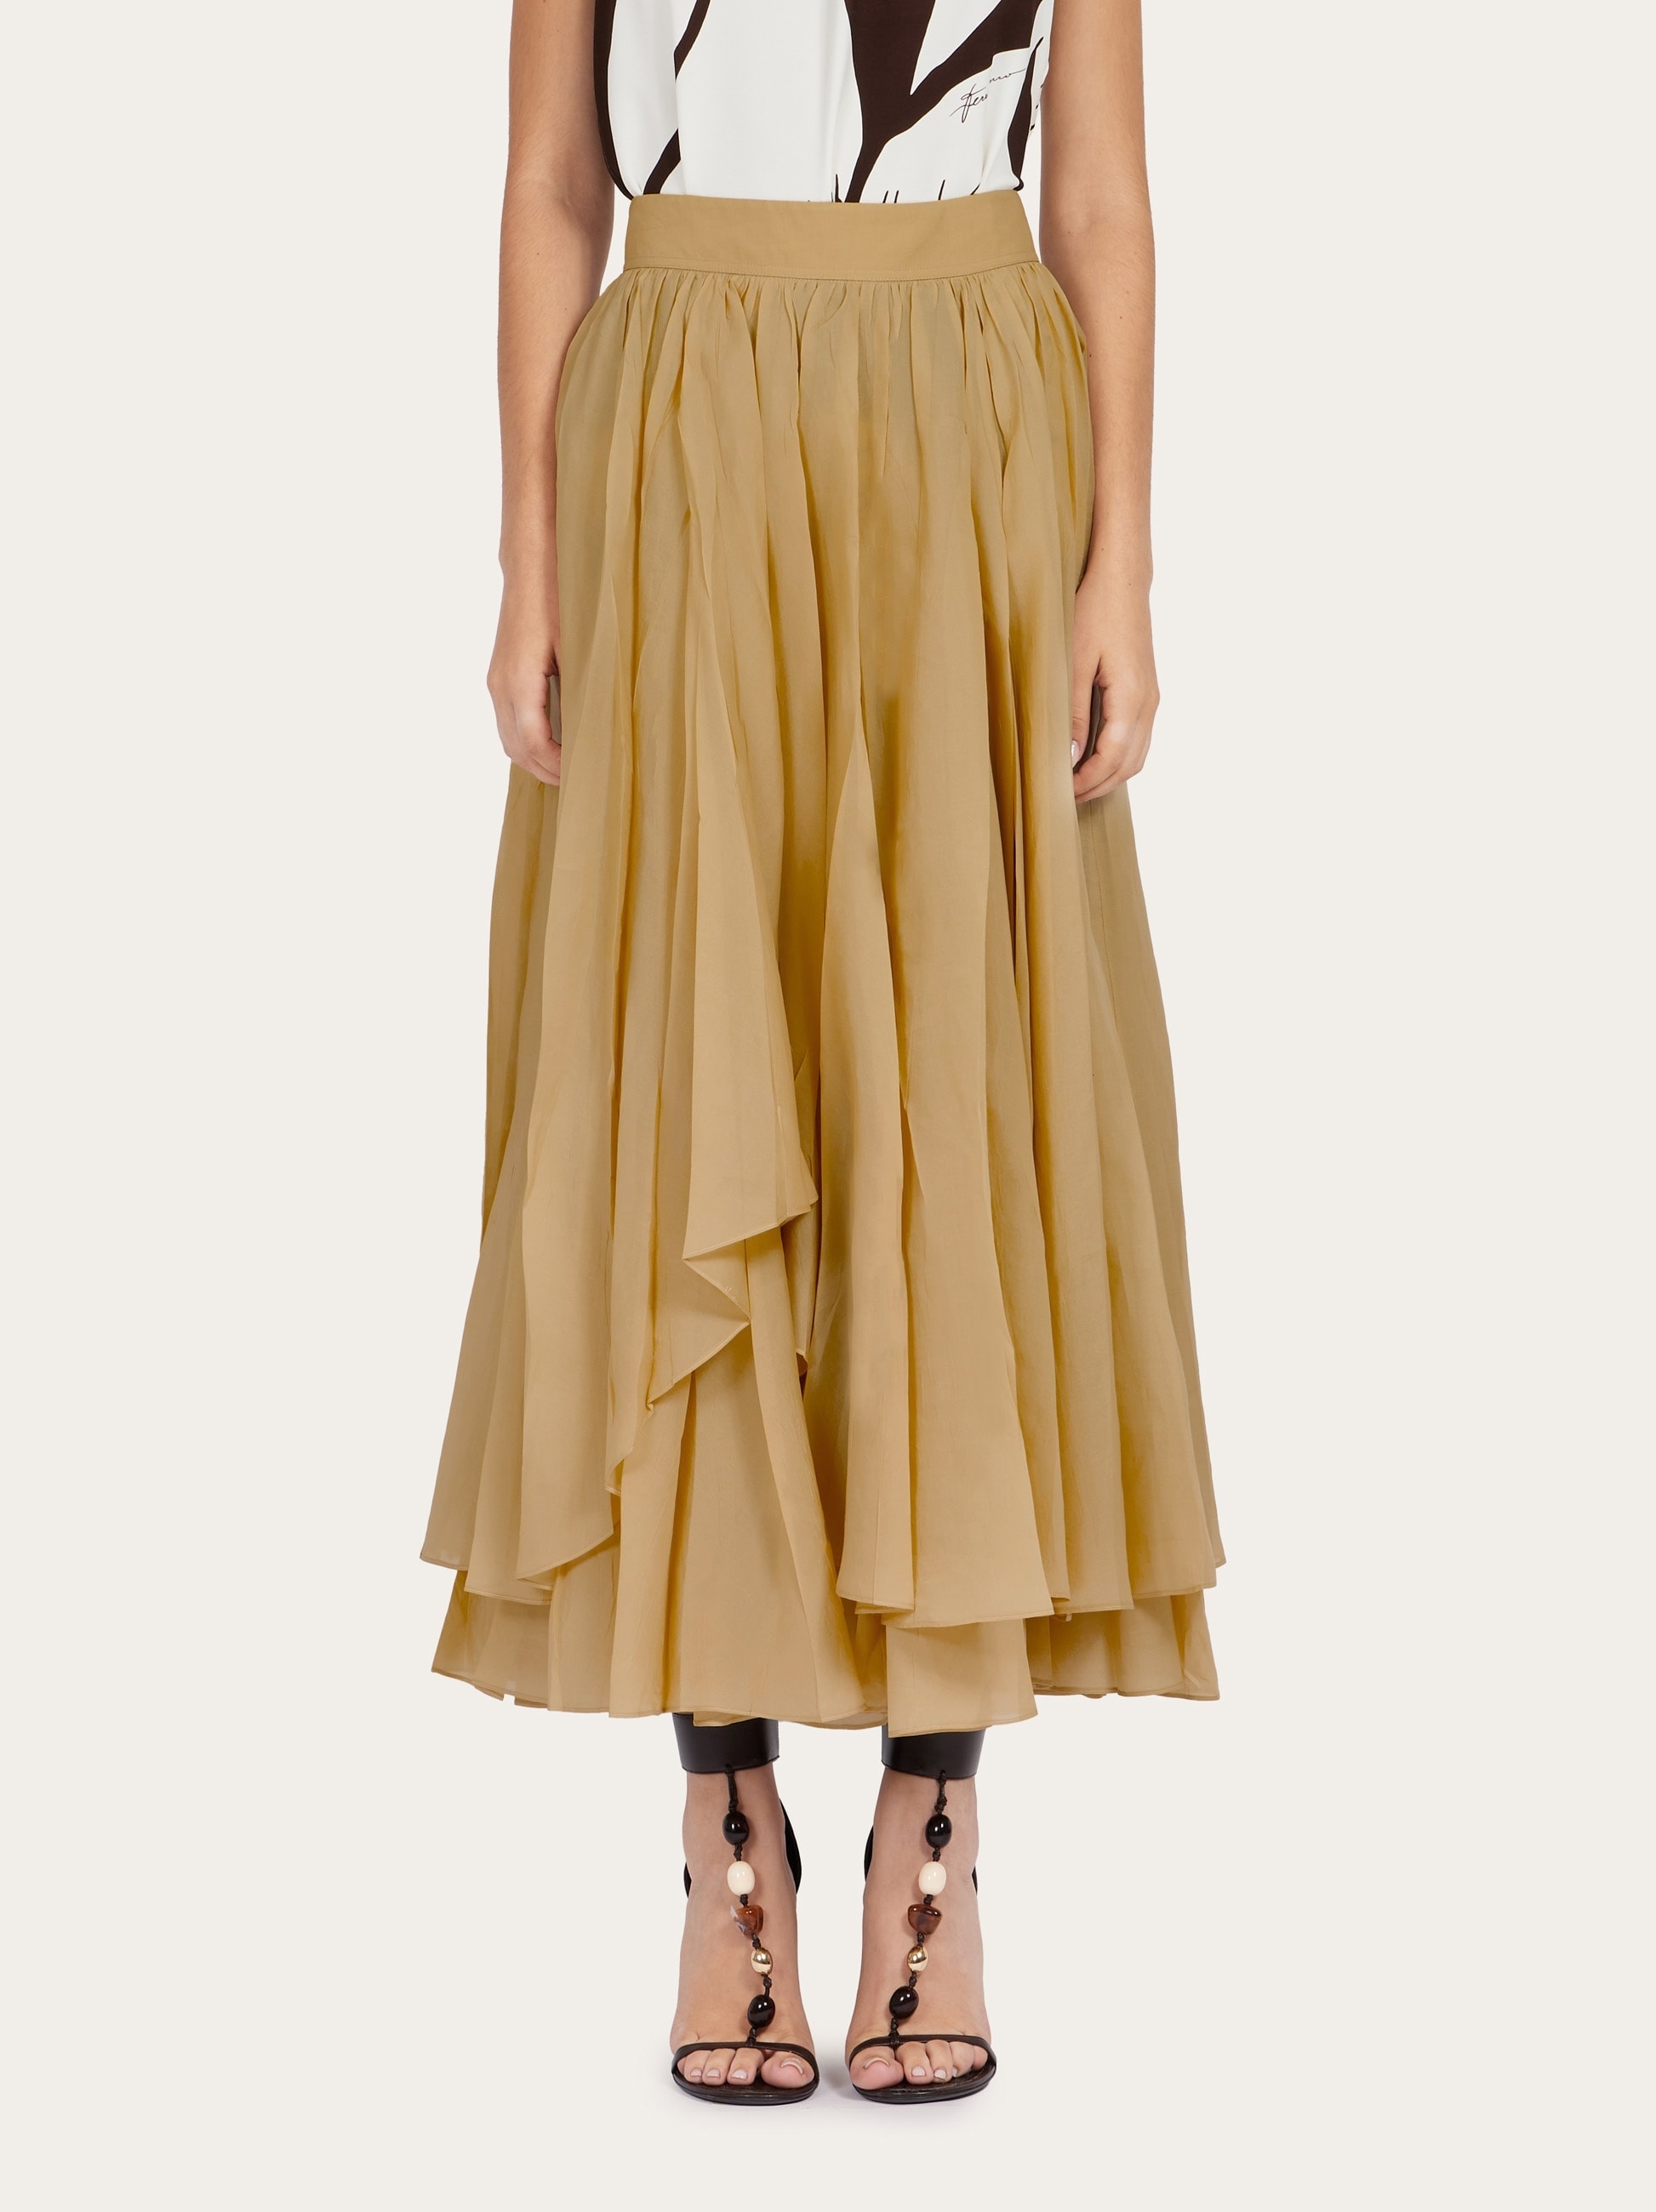 Layered skirt - 2